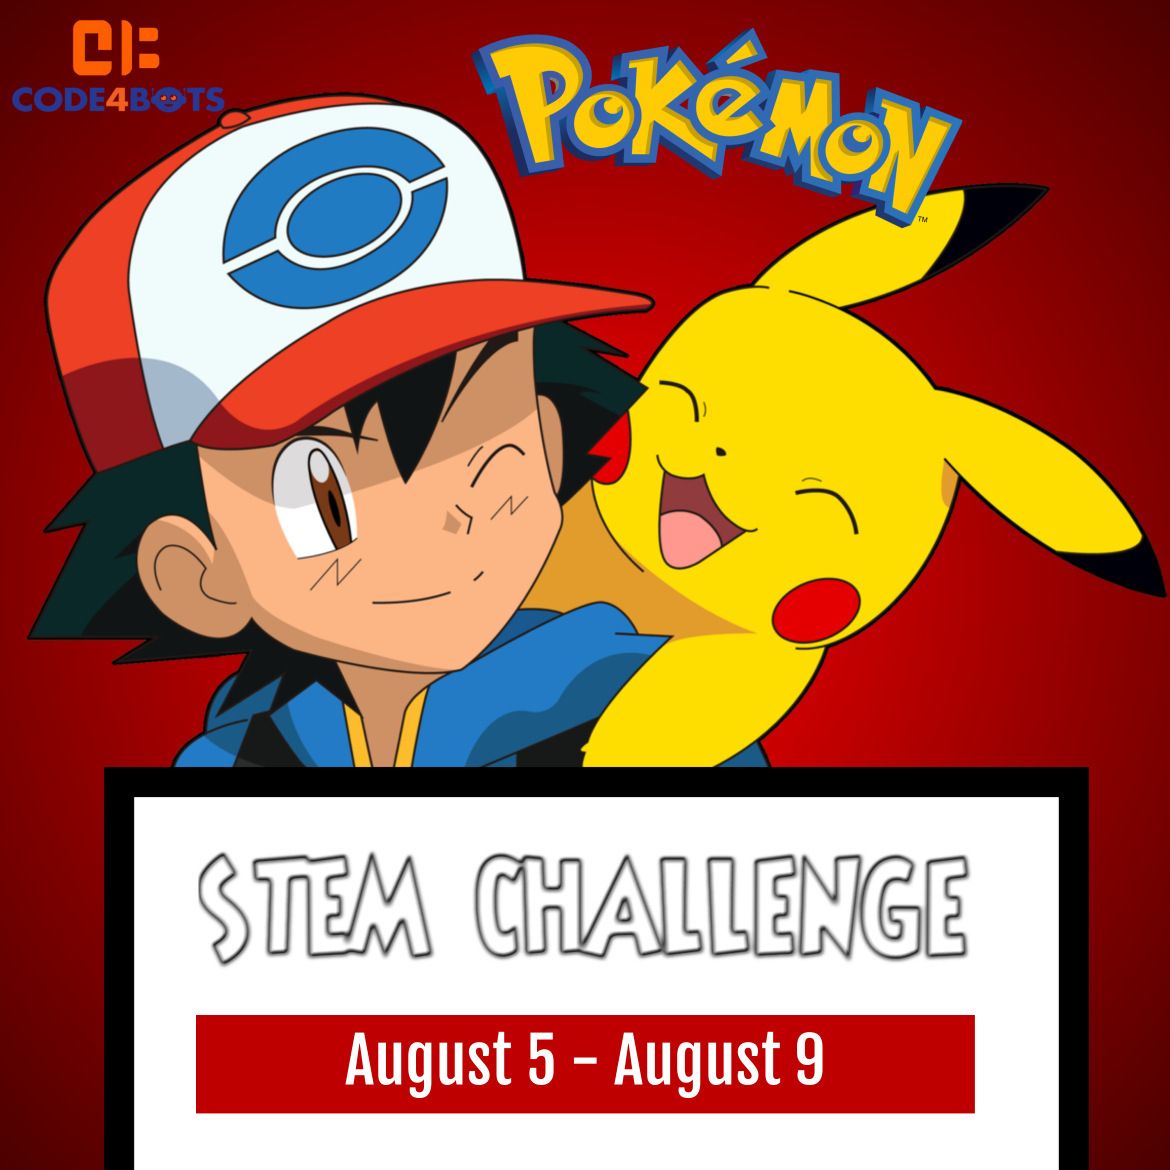 Code4Bots Pokemon STEM Challenge Half-Day Afternoon Summer Camp